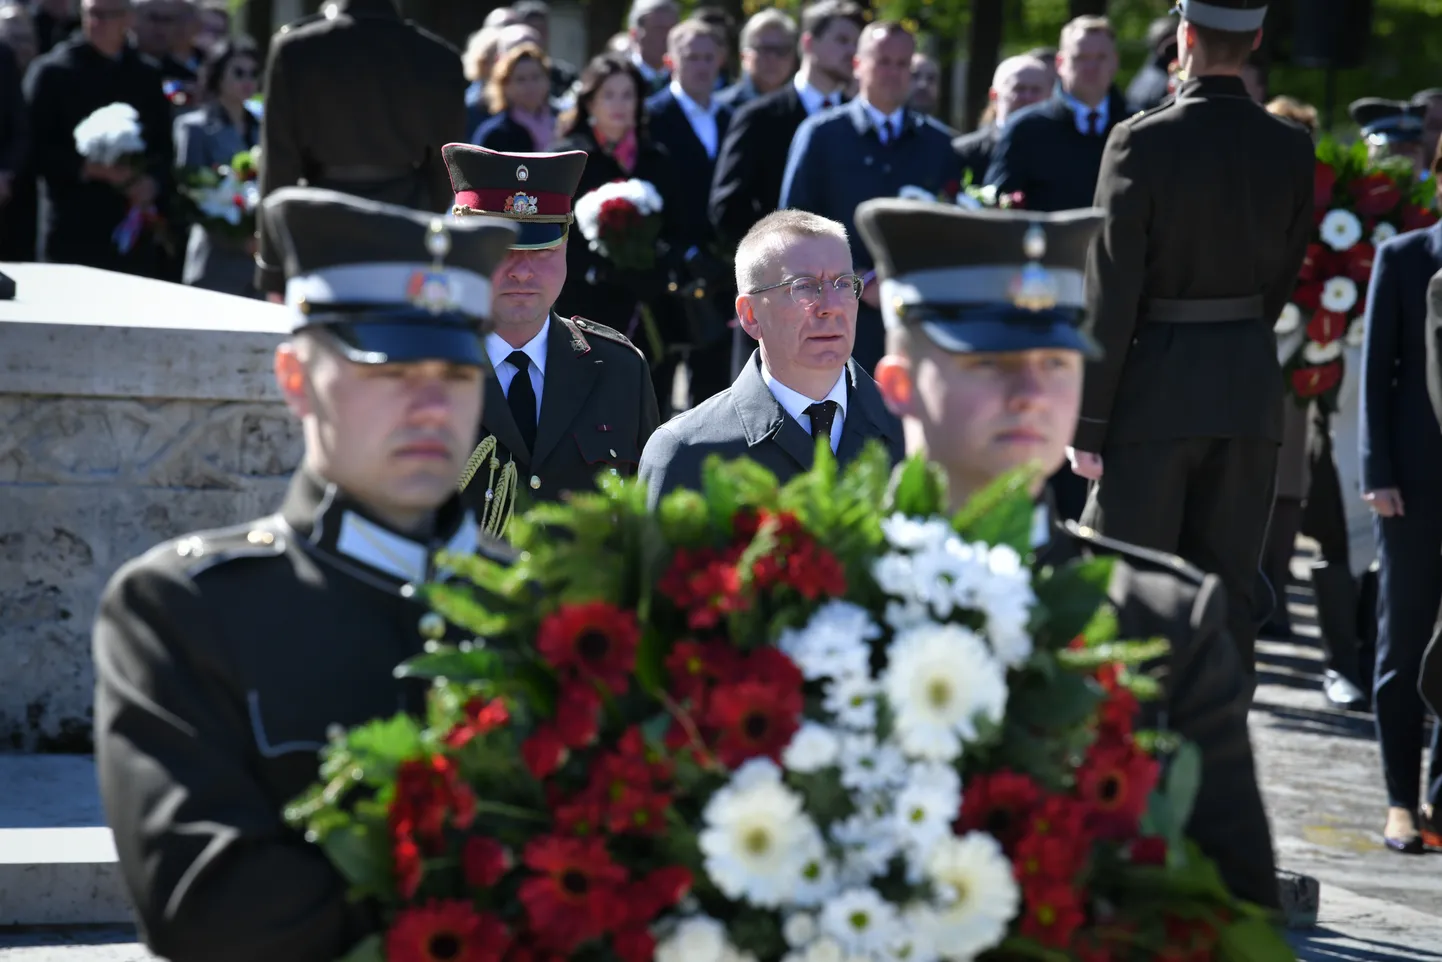 Valsts prezidents Edgars Rinkēvičs noliek ziedus Rīgas Brāļu kapos, godinot Nacisma sagrāves un Otrā pasaules kara upuru piemiņu